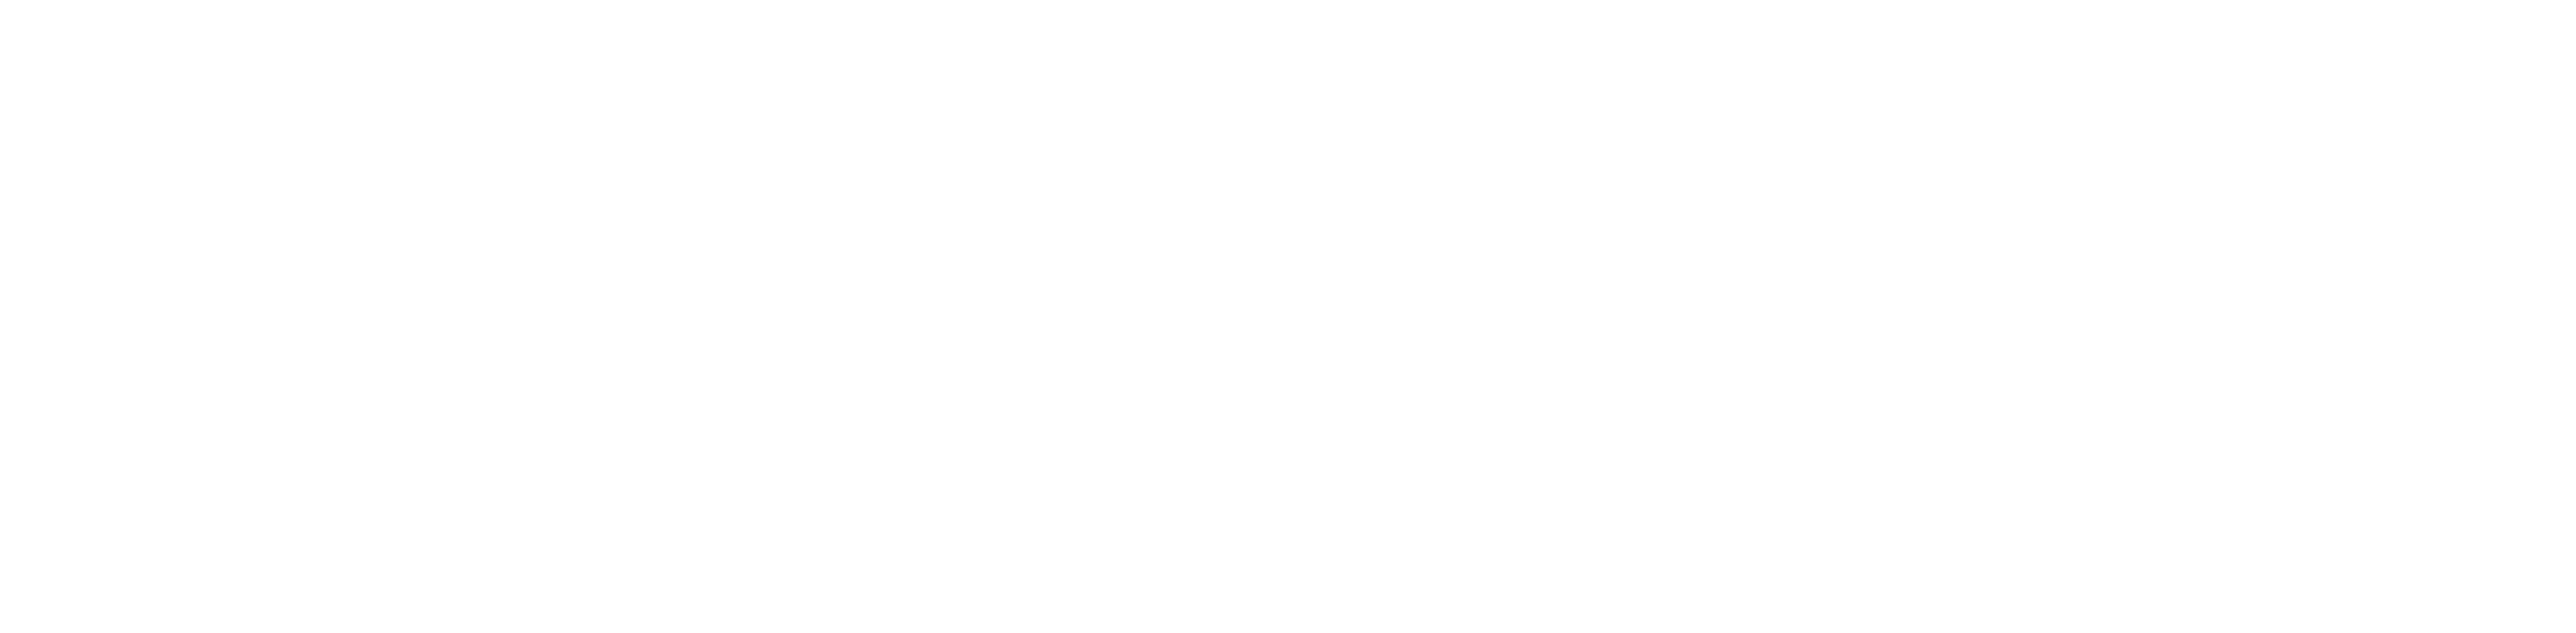 PEcustom logotype